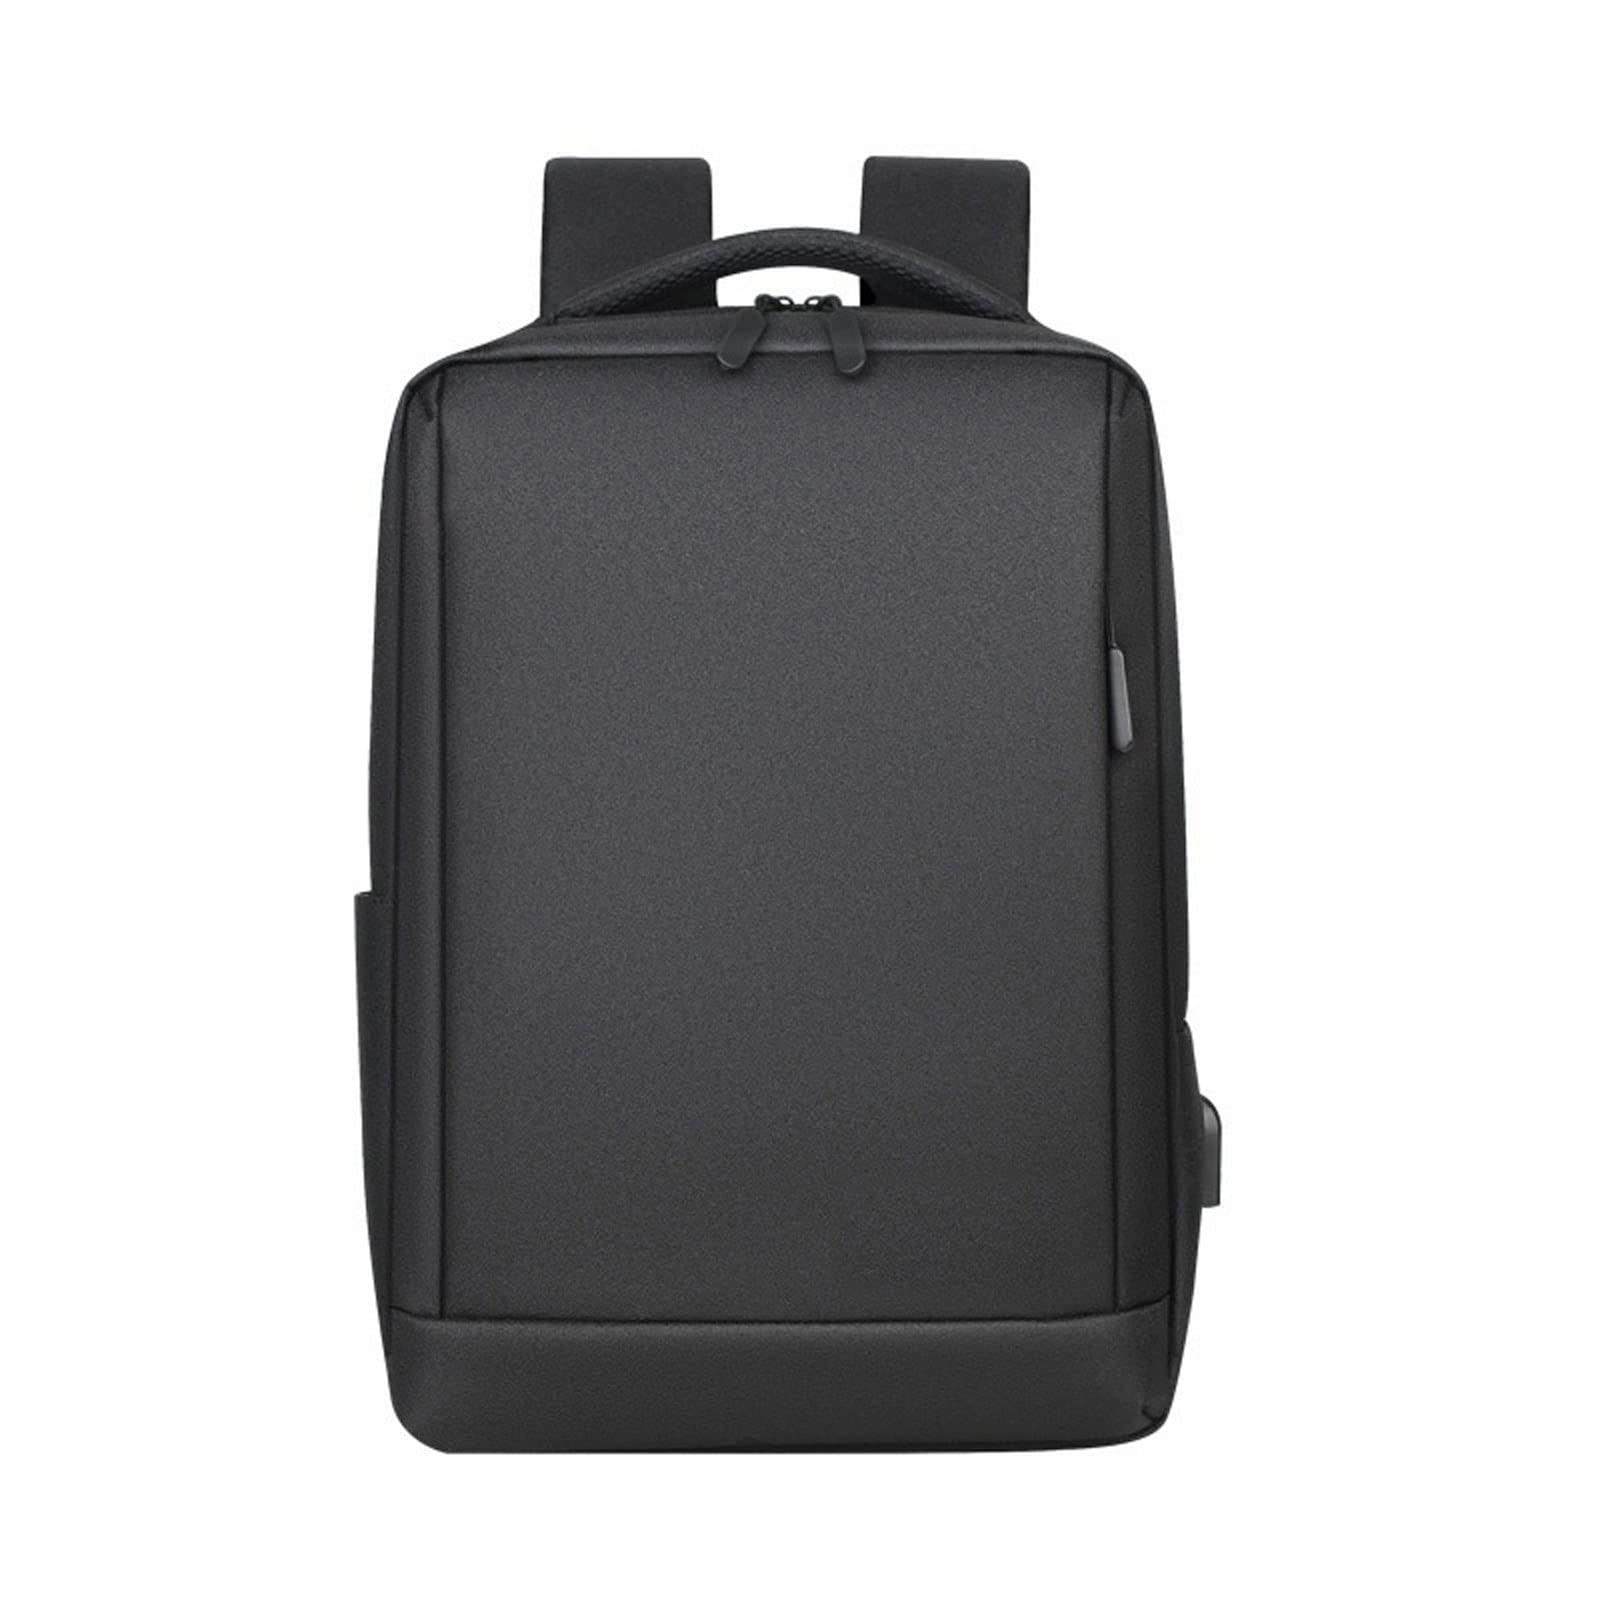 送料無料GIFYY Mochilas para Hombres 1pc Laptop Waterproof Bagpack Teens Shoulders Bag Logo Sacs Dos Color Black並